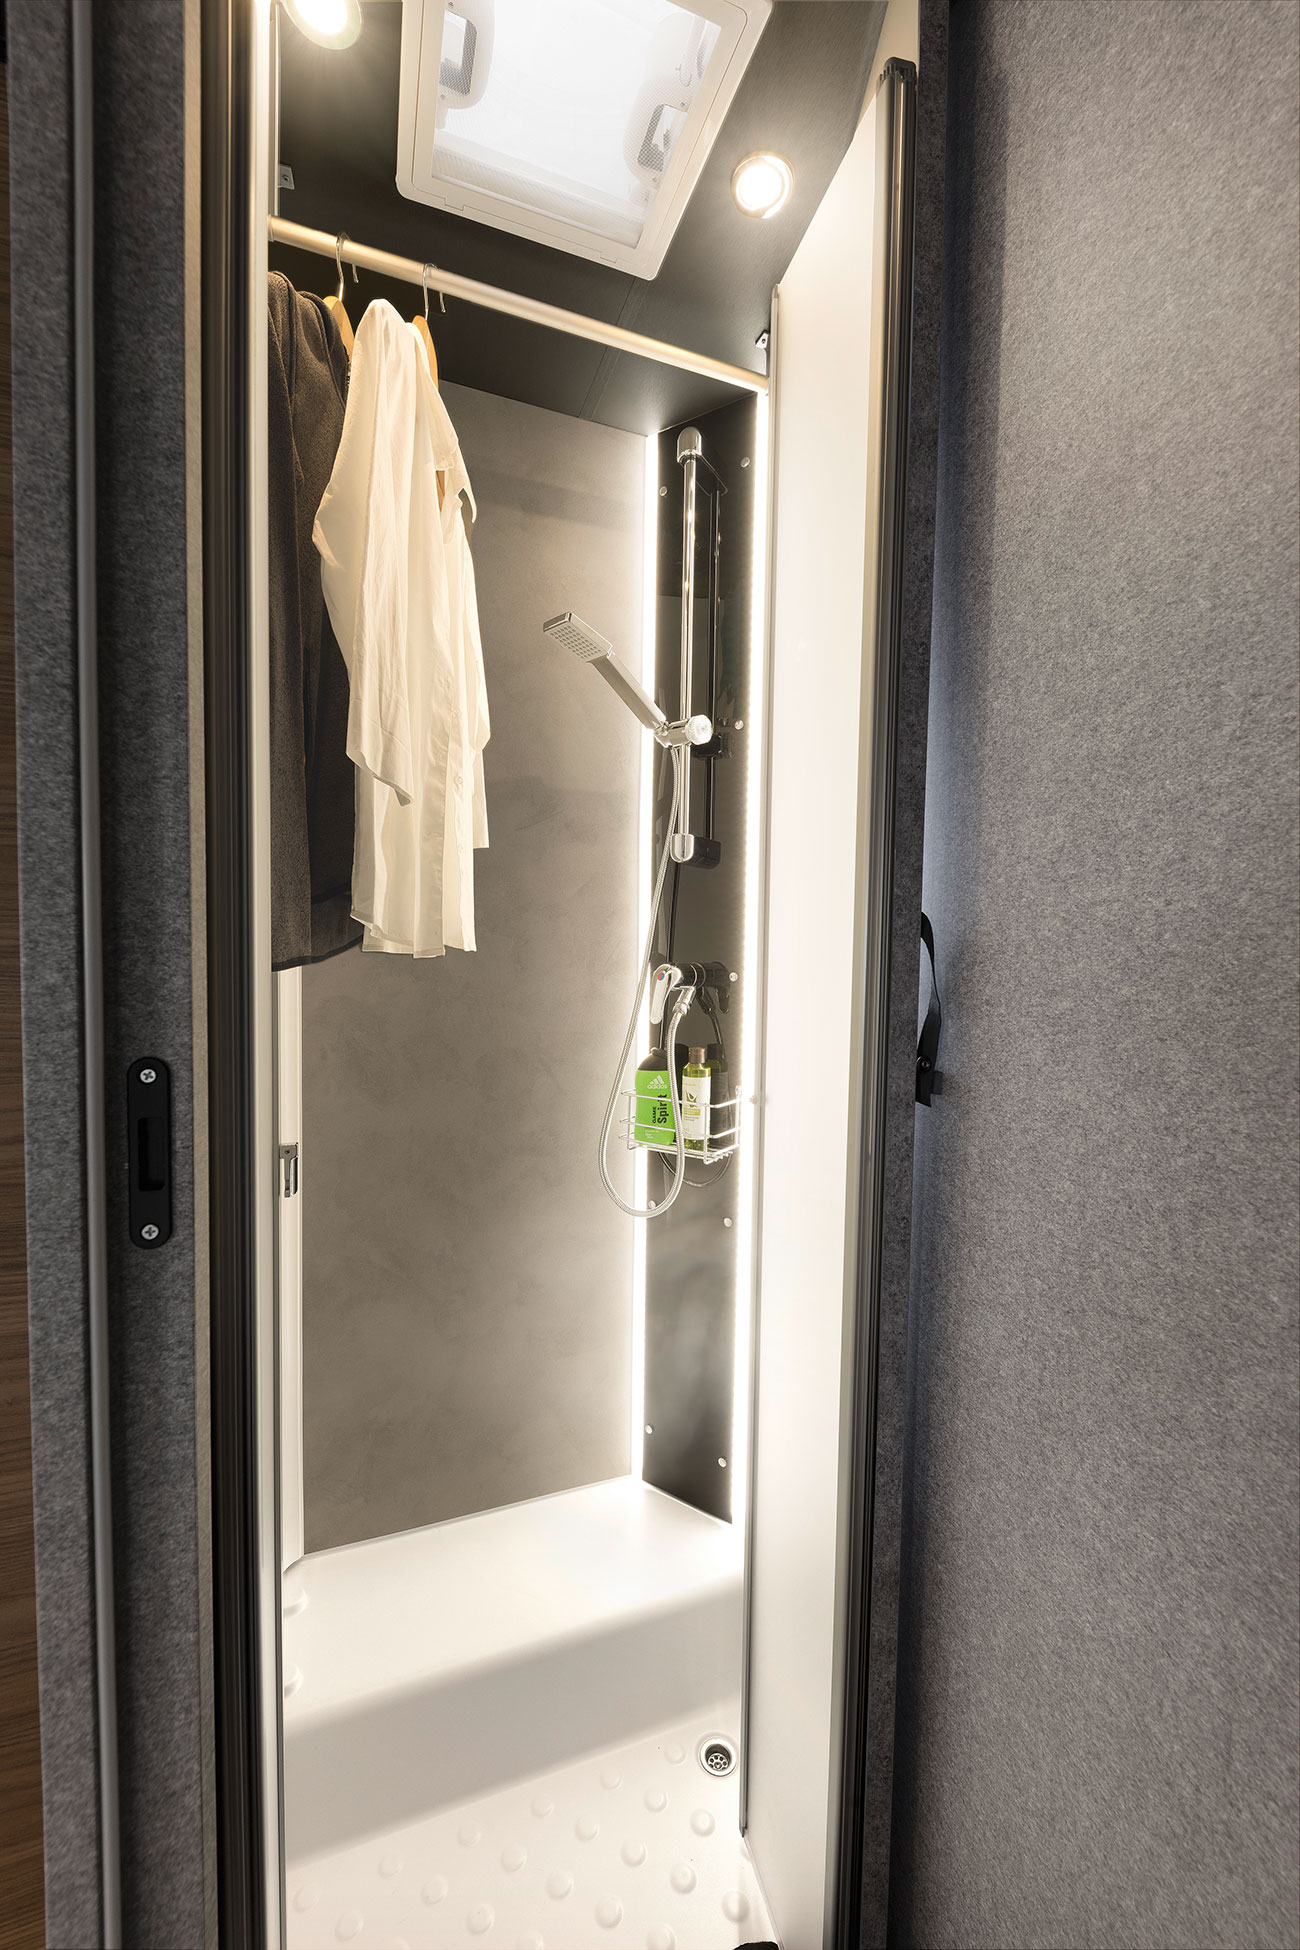 Quando non si usa, la doccia diventa uno spazio dove stendere i panni bagnati o semplicemente un armadio in più.